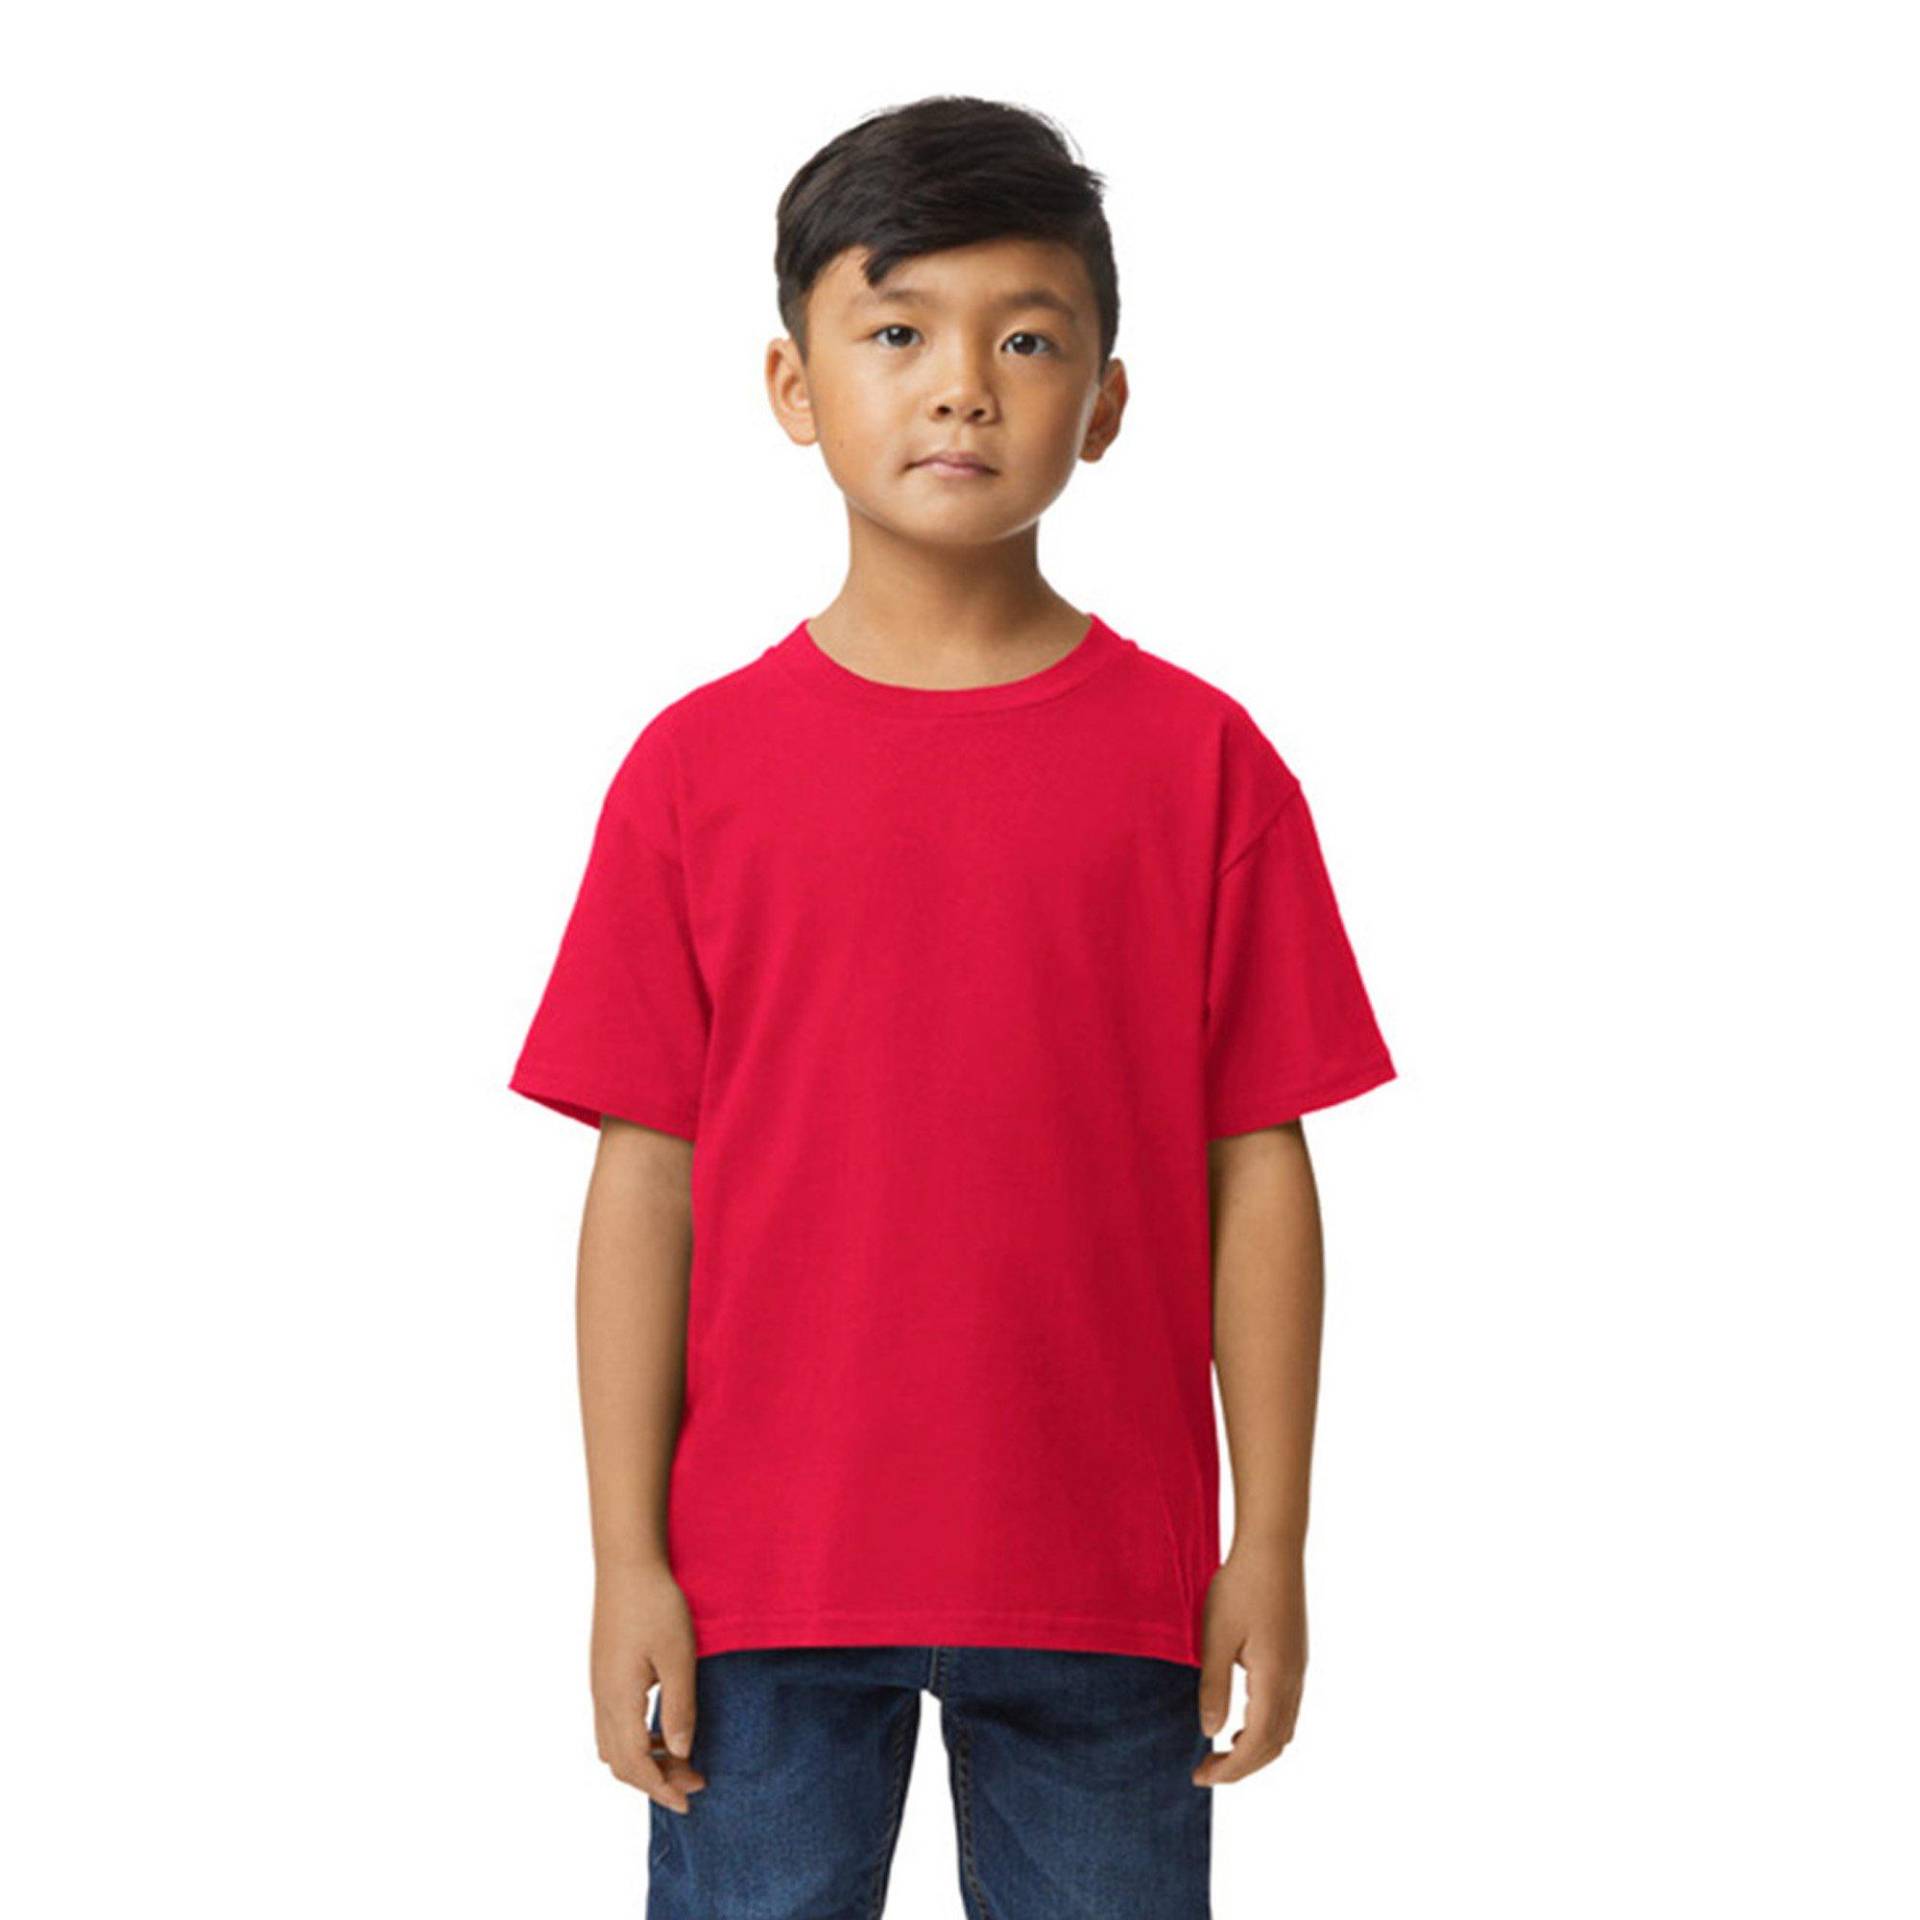 Softstyle Tshirt Mädchen Rot Bunt XS von Gildan